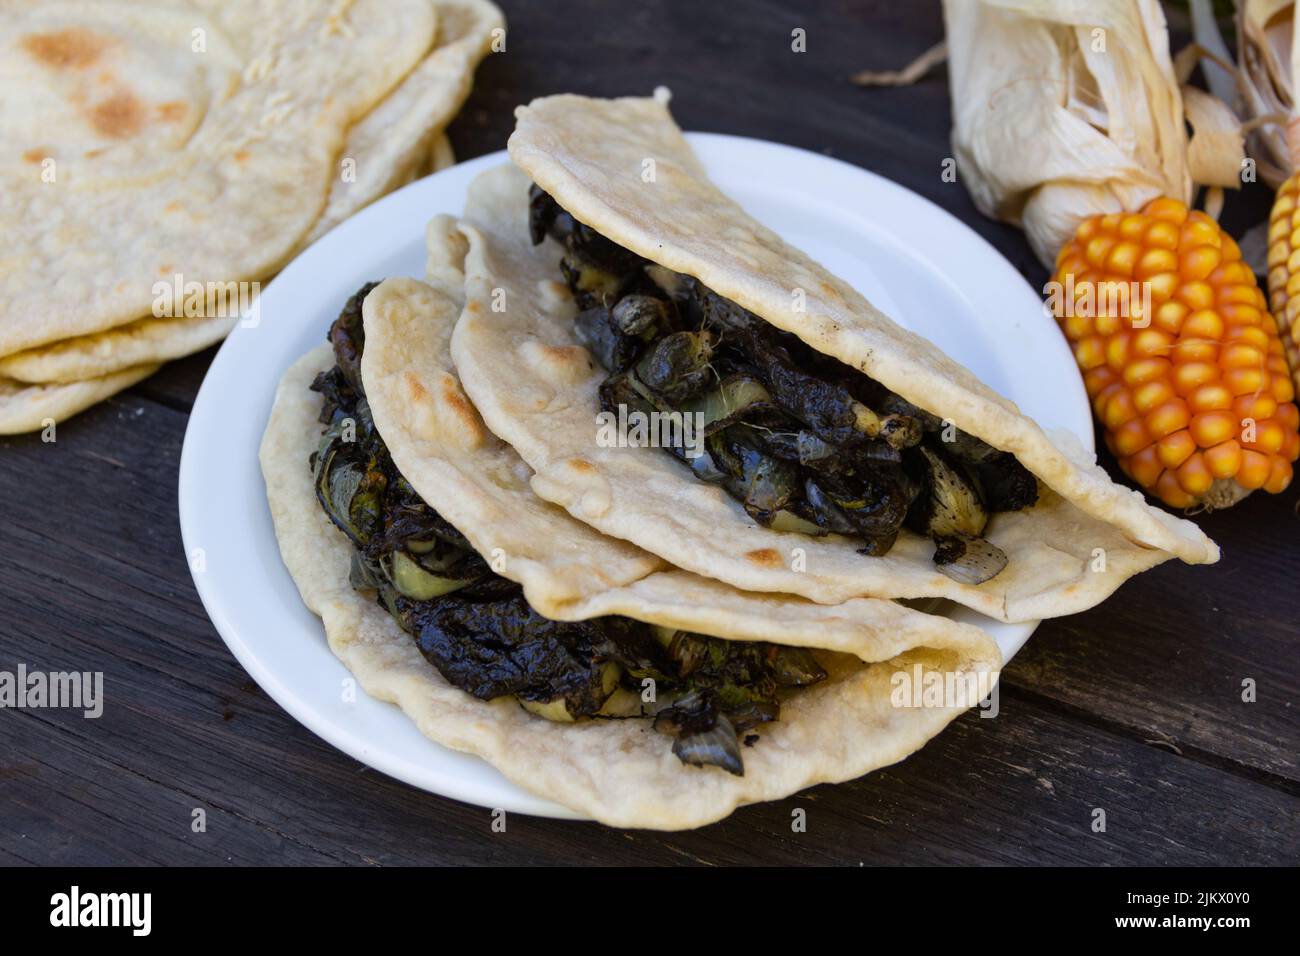 assiette de tacos mexicains farcis de huitlacoche sur bois rustique Banque D'Images